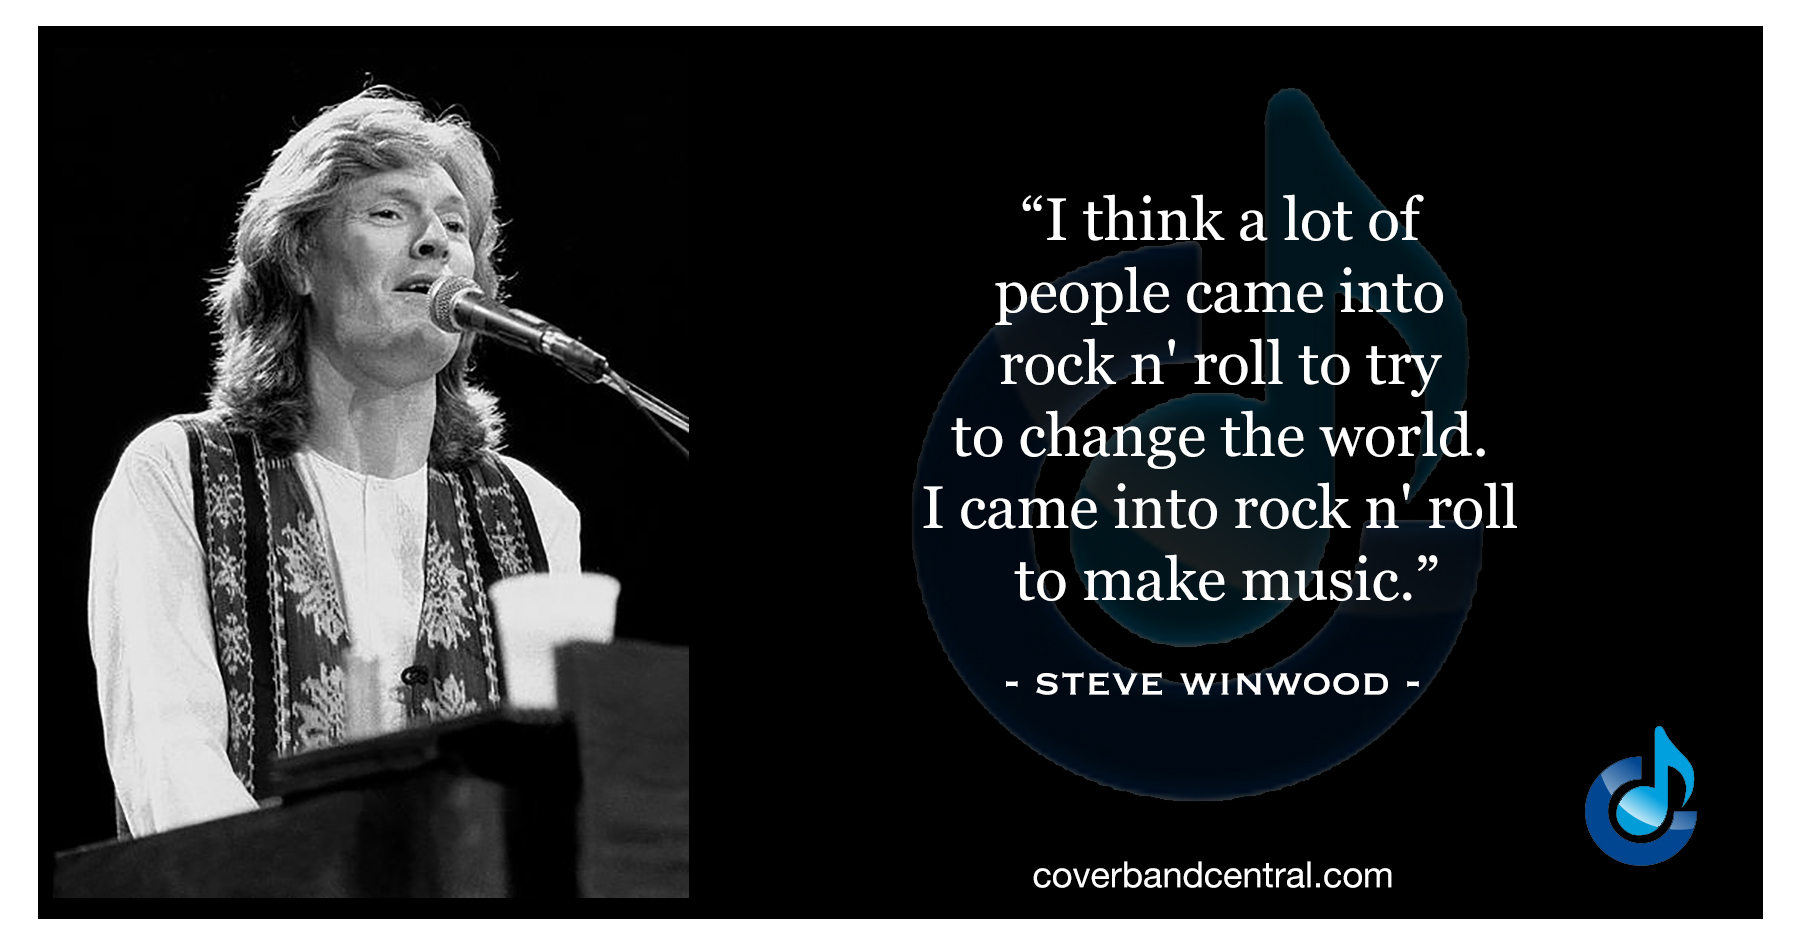 Steve Winwood quote